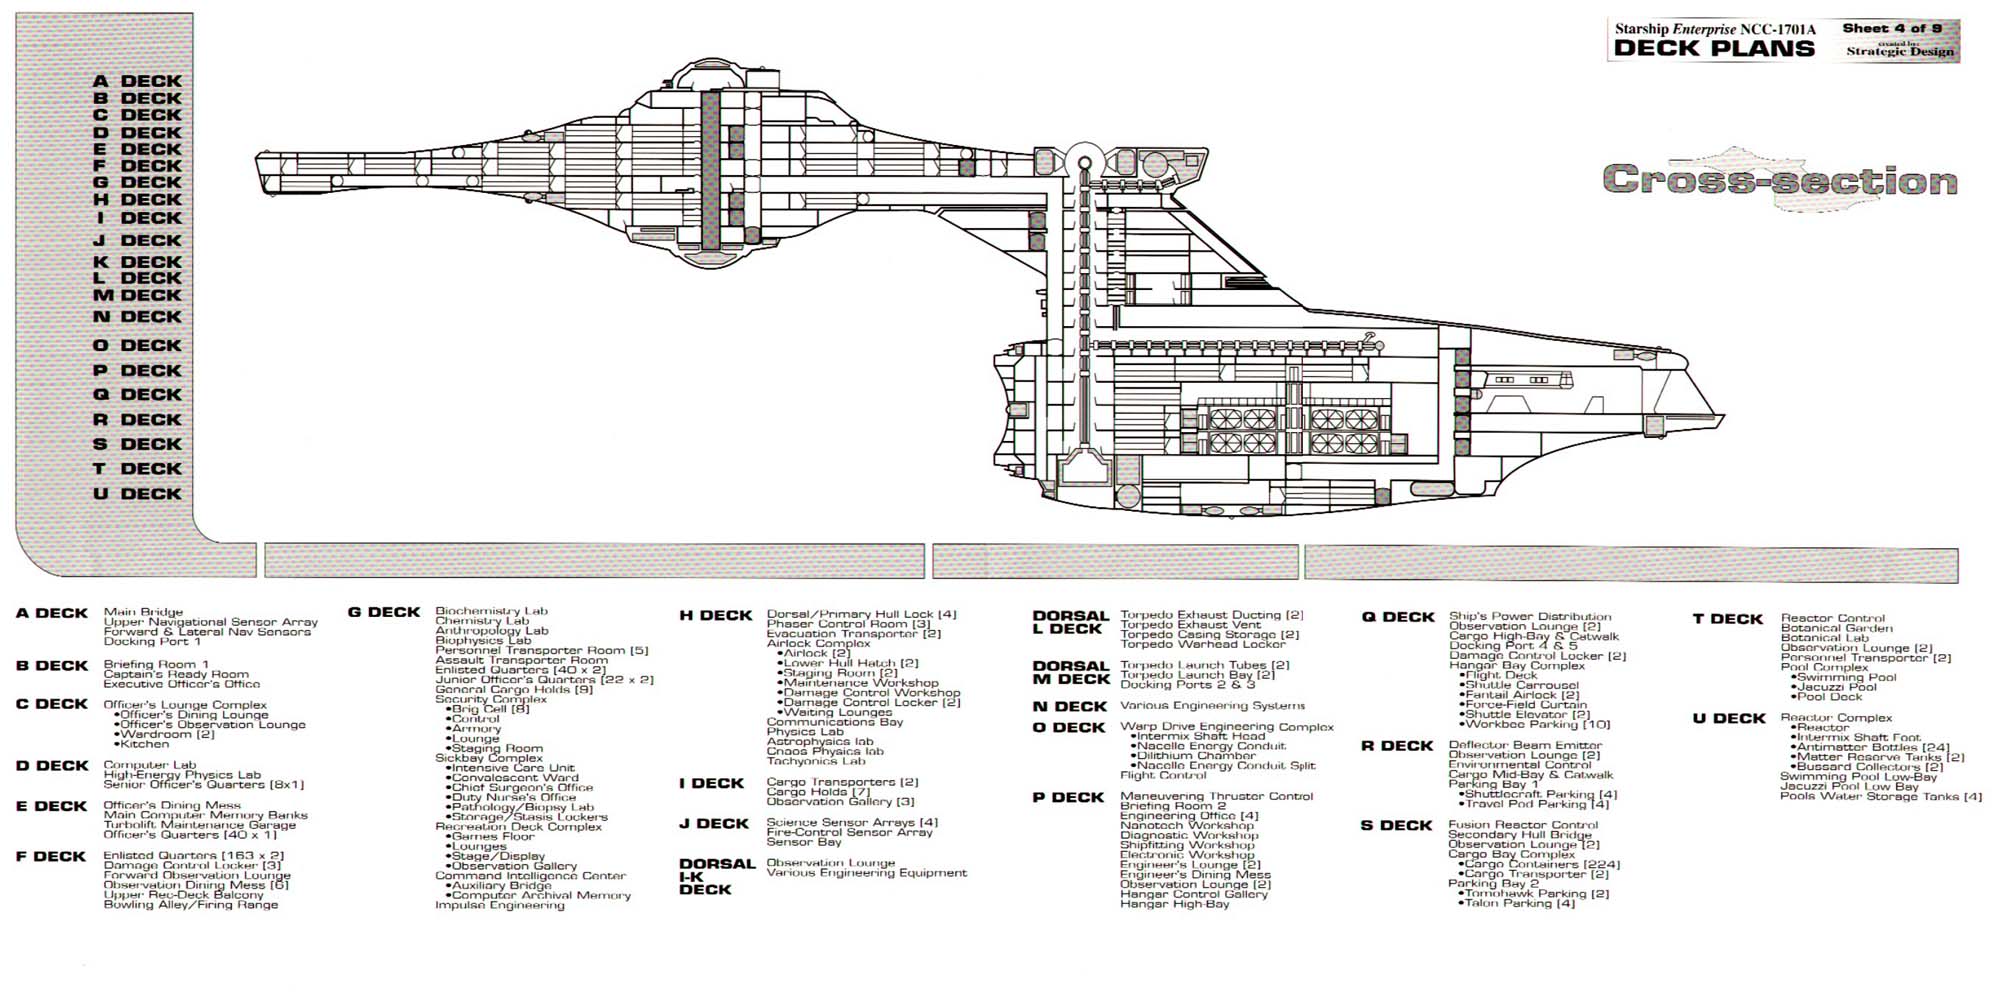 U.S.S Enterprise NCC1701A Deck Plans